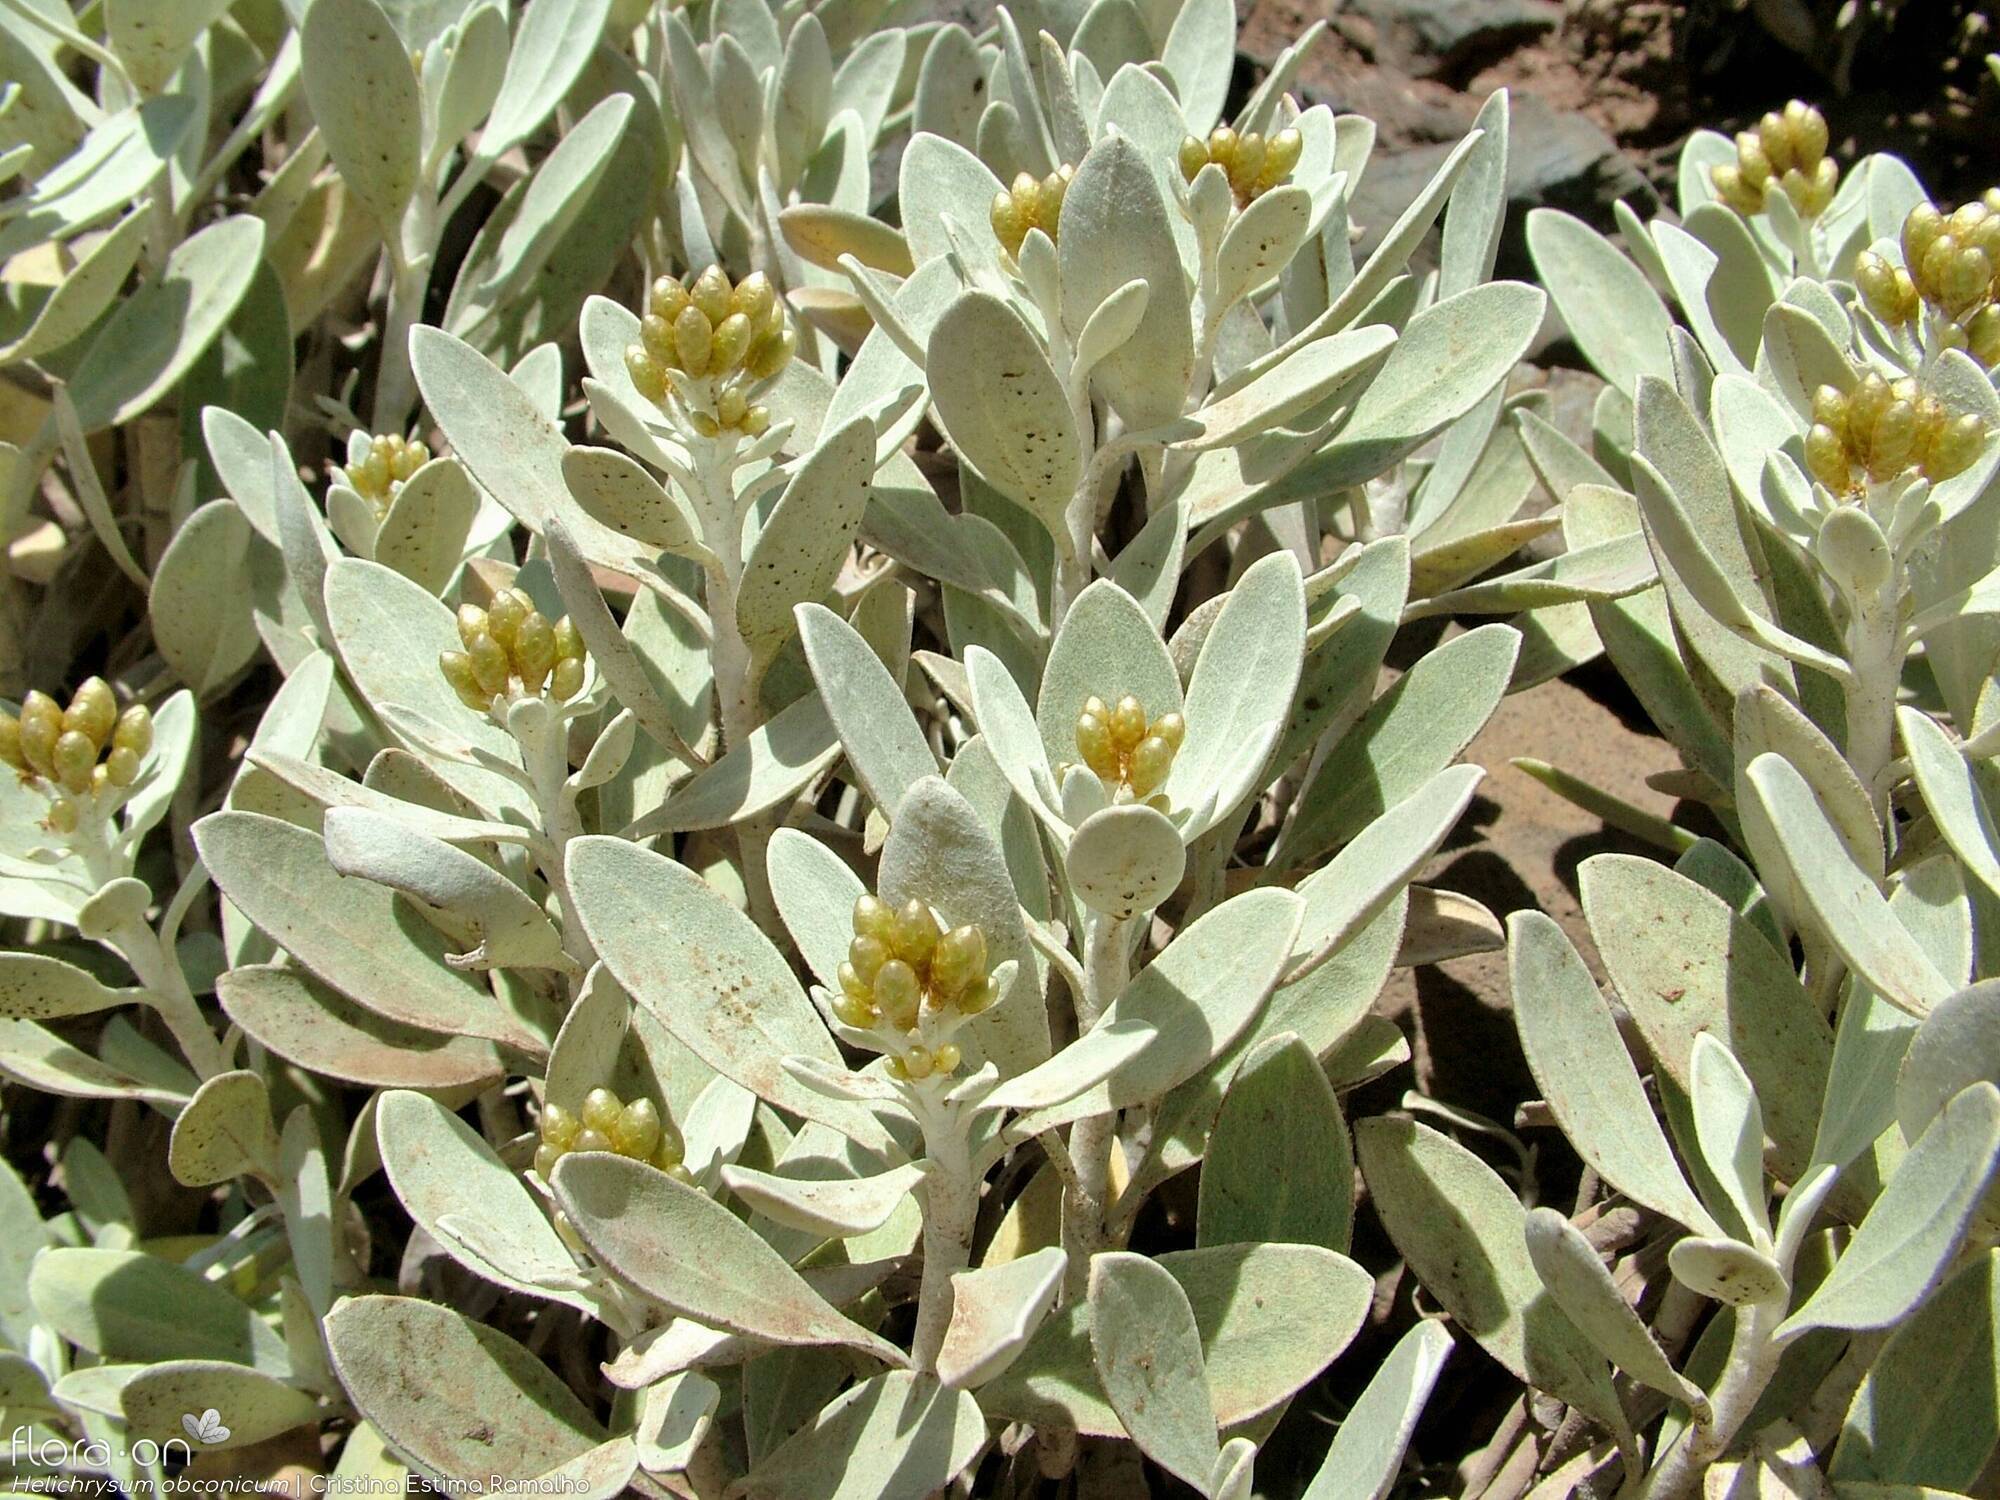 Helichrysum obconicum - Flor (geral) | Cristina Estima Ramalho; CC BY-NC 4.0